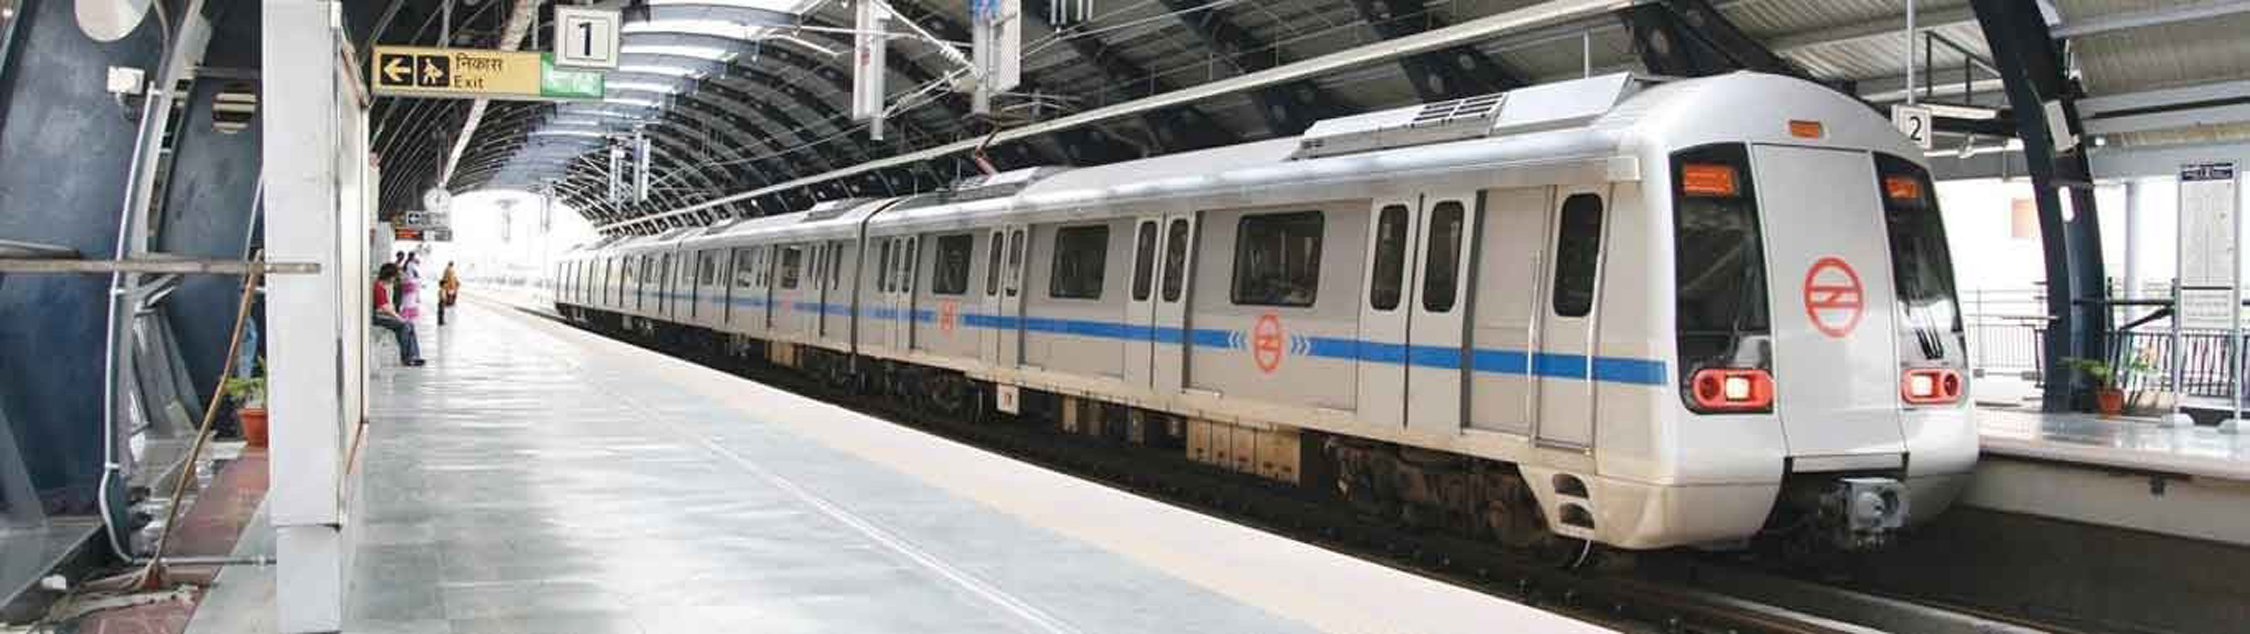 कानपुर में कोलकाता की तर्ज पर चलेगी मेट्रो, टे्रन के ऊपर नहीं होगी बिजली की लाइन